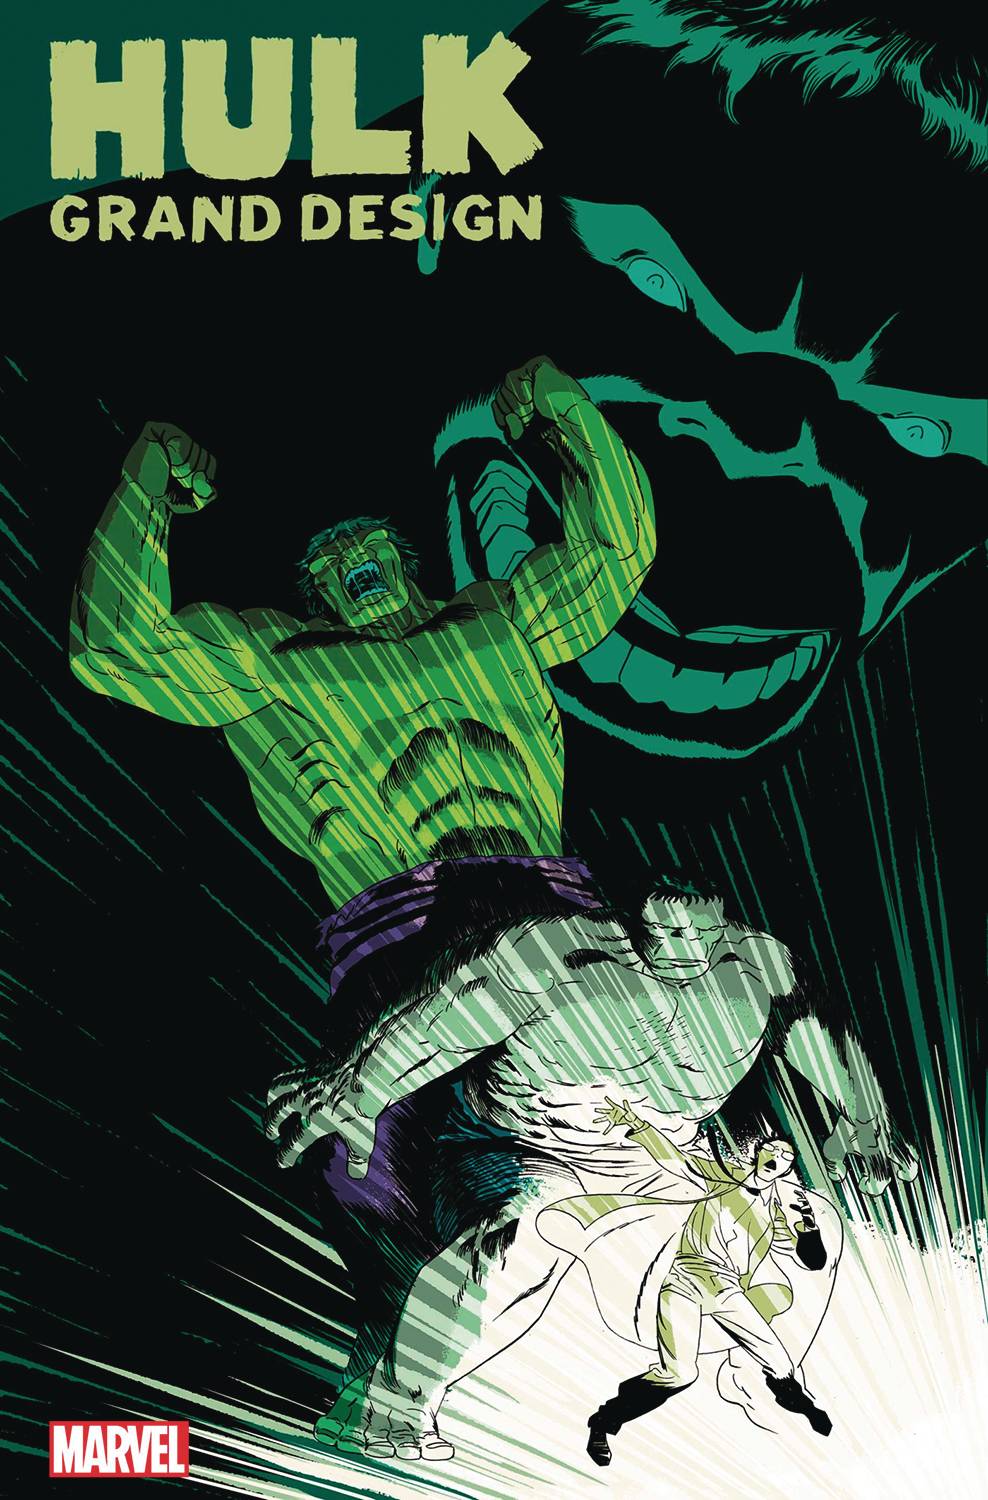 Hulk Grand Design: Monster 1